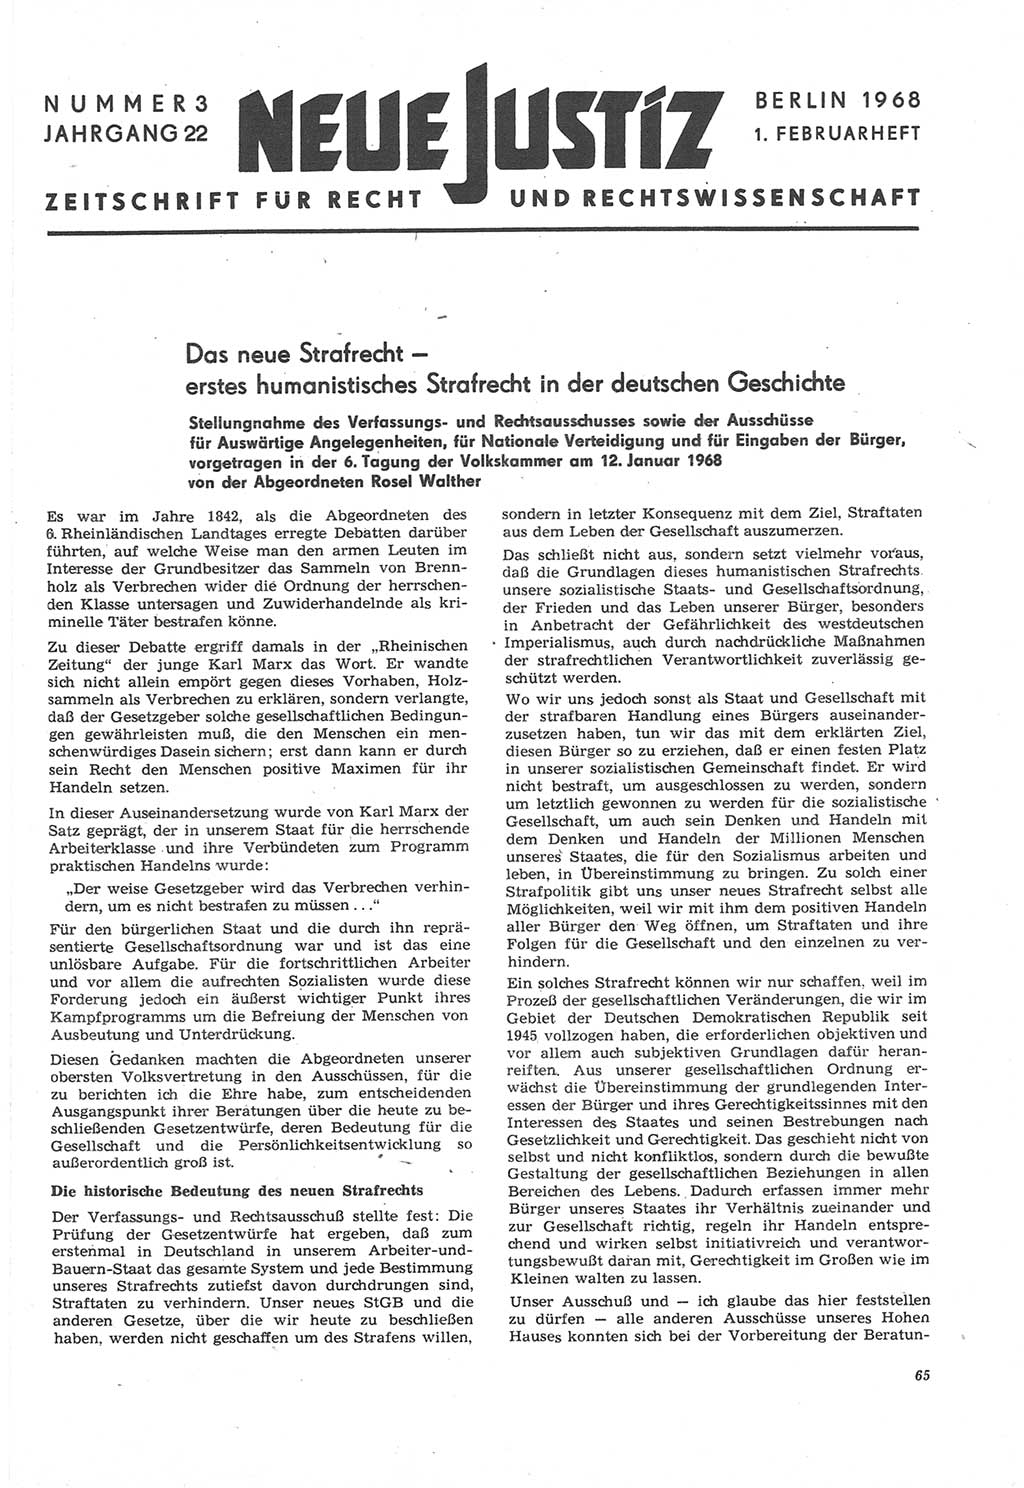 Neue Justiz (NJ), Zeitschrift für Recht und Rechtswissenschaft [Deutsche Demokratische Republik (DDR)], 22. Jahrgang 1968, Seite 65 (NJ DDR 1968, S. 65)